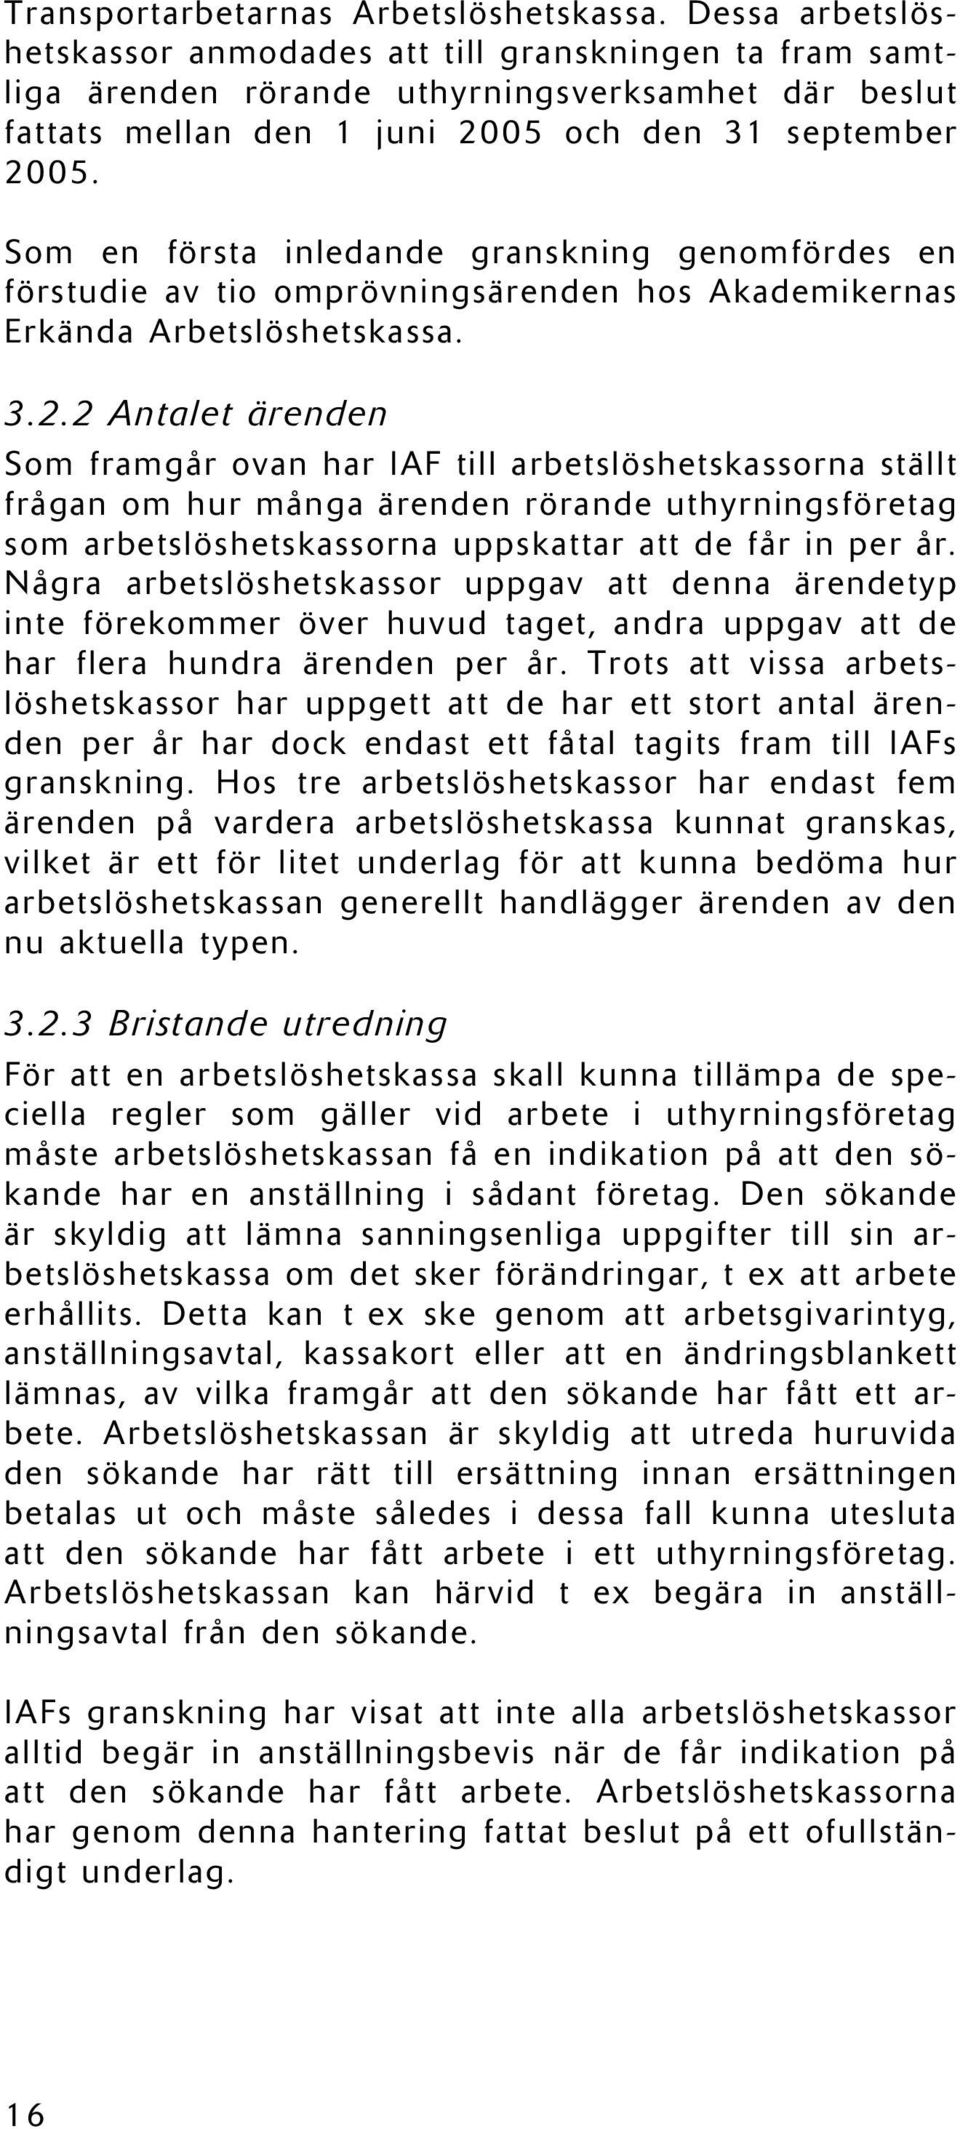 Som en första inledande granskning genomfördes en förstudie av tio omprövningsärenden hos Akademikernas Erkända Arbetslöshetskassa. 3.2.